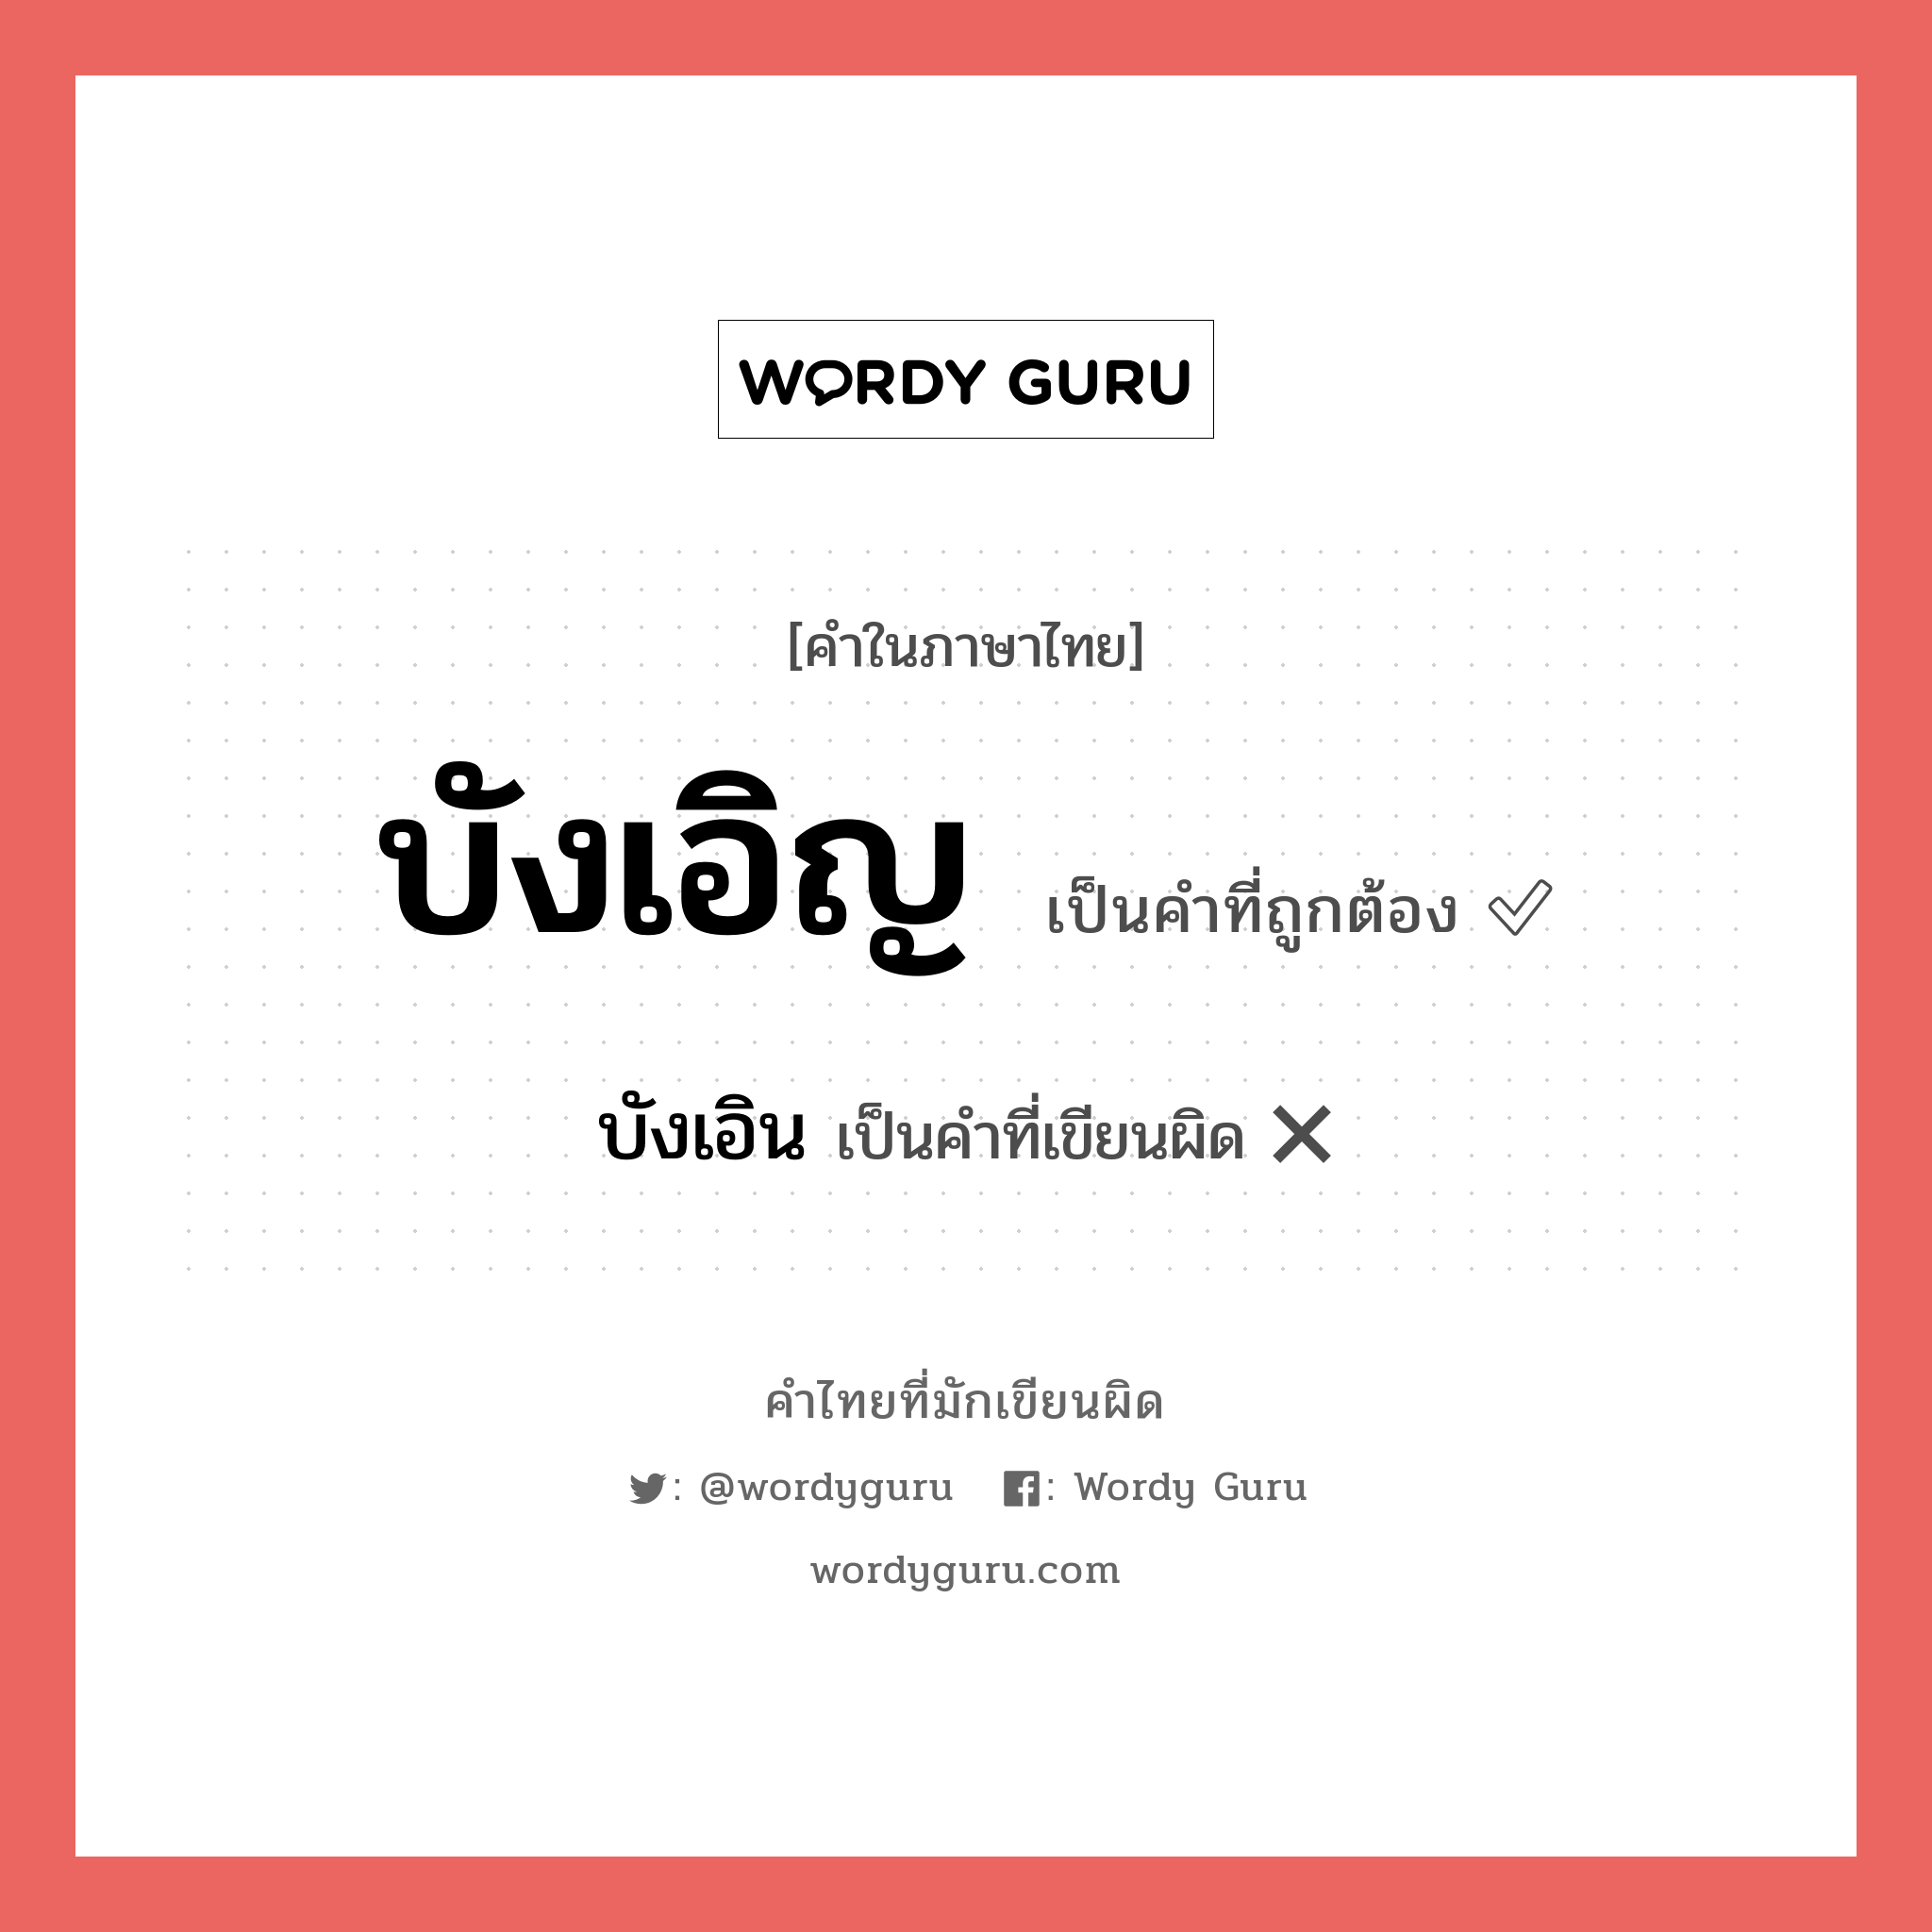 บังเอิน หรือ บังเอิญ คำไหนเขียนถูก?, คำในภาษาไทยที่มักเขียนผิด บังเอิน คำที่ผิด ❌ บังเอิญ